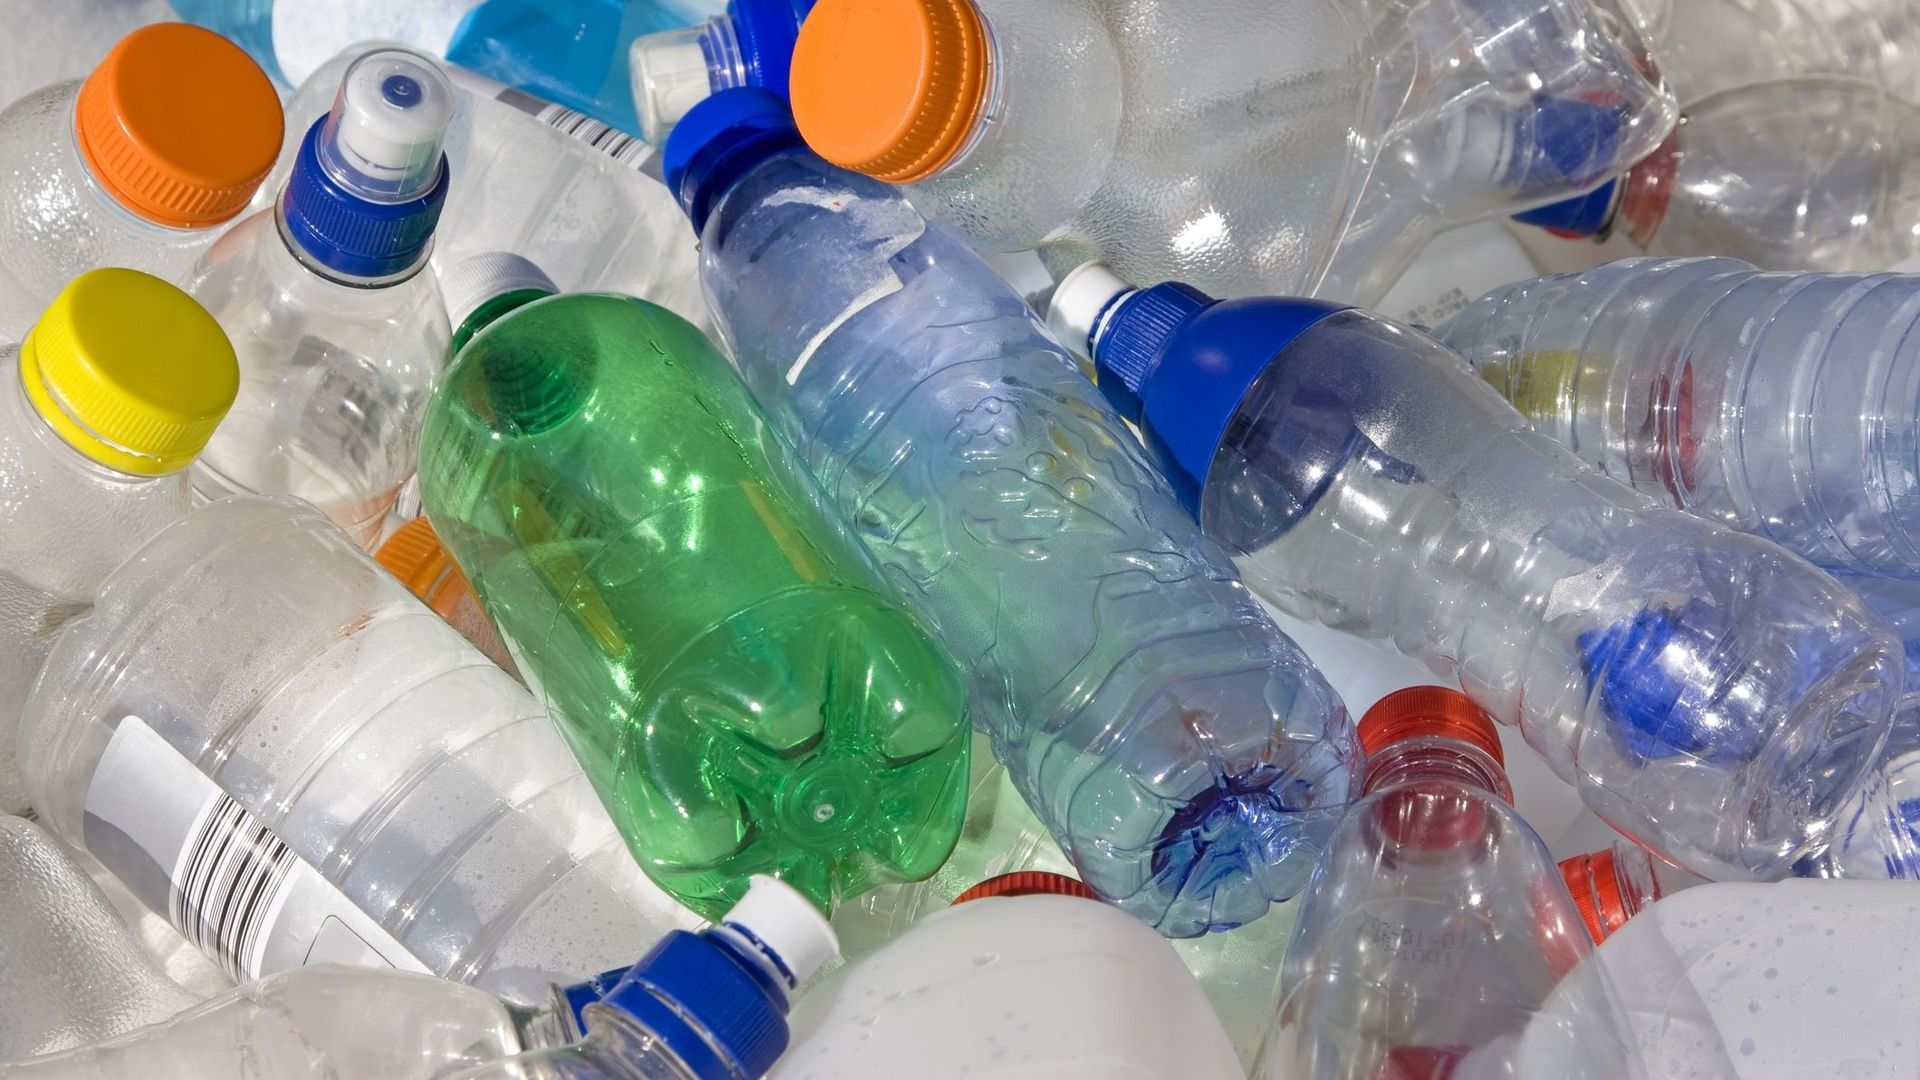 Le recyclage des bouteilles en plastique, c'est bien pour la planète... moins pour notre santé.